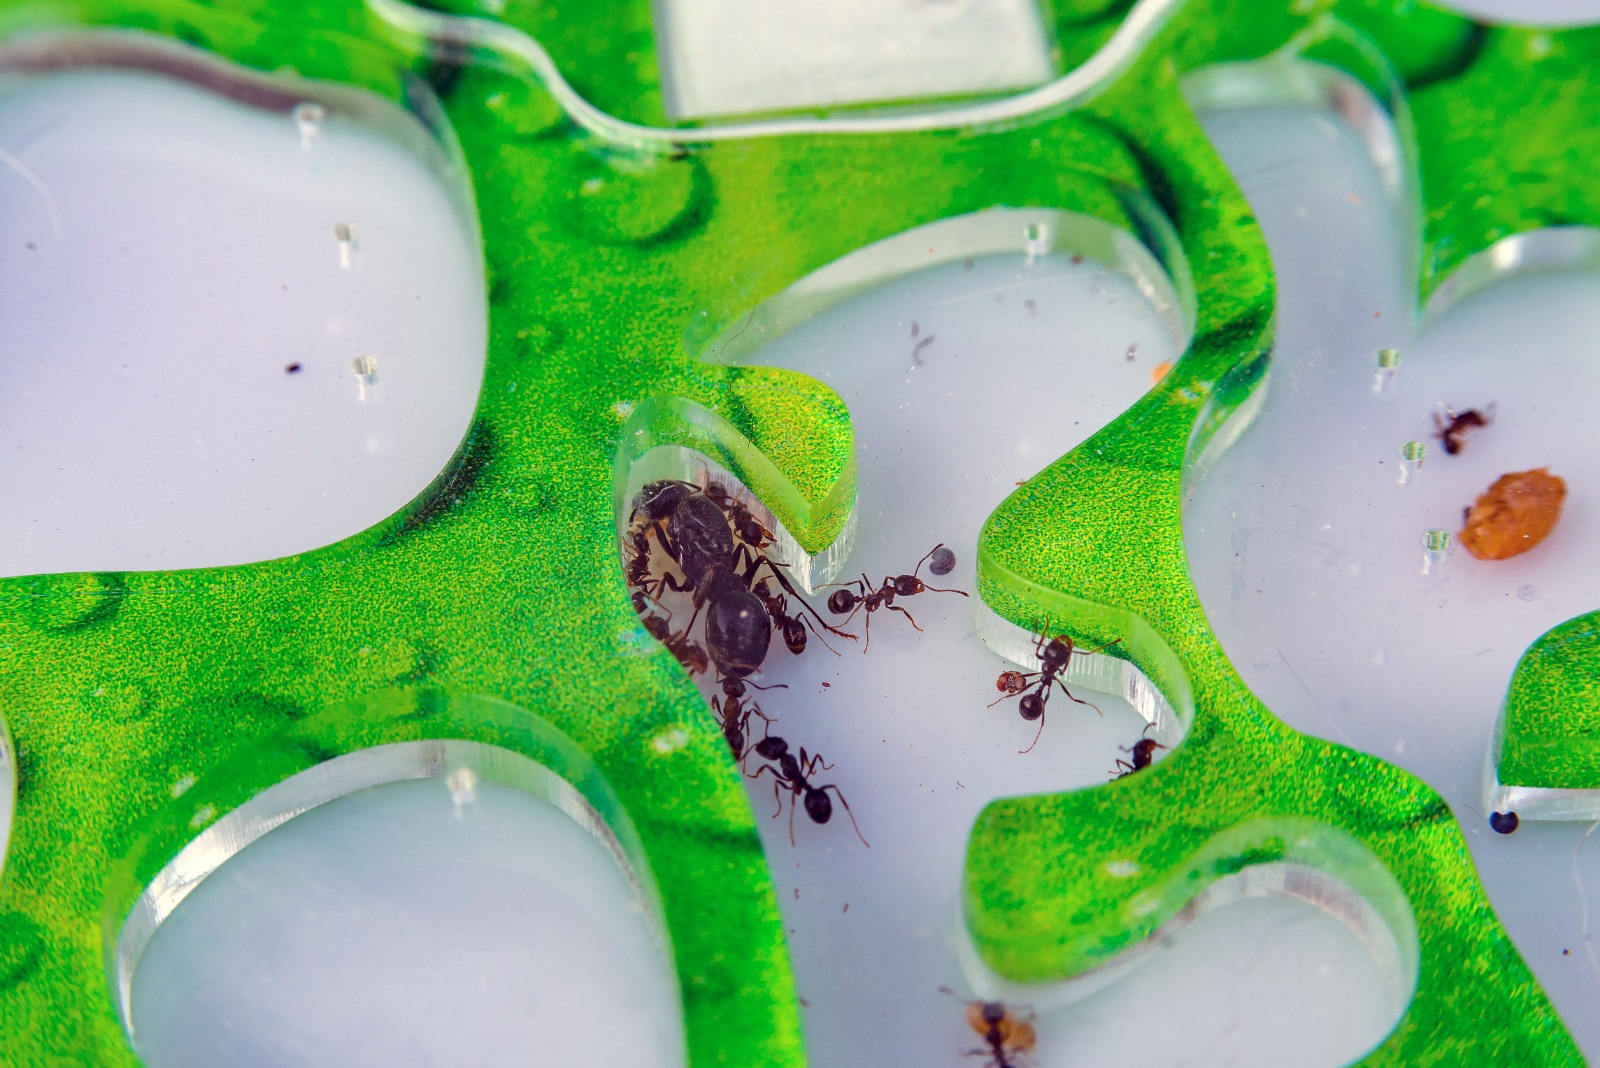 Colonias de hormigas pueden cuidarse en casa en terrarios, siempre y cuando se tomen en cuenta sus necesidades particulares. (Foto Prensa Libre: Shutterstock)